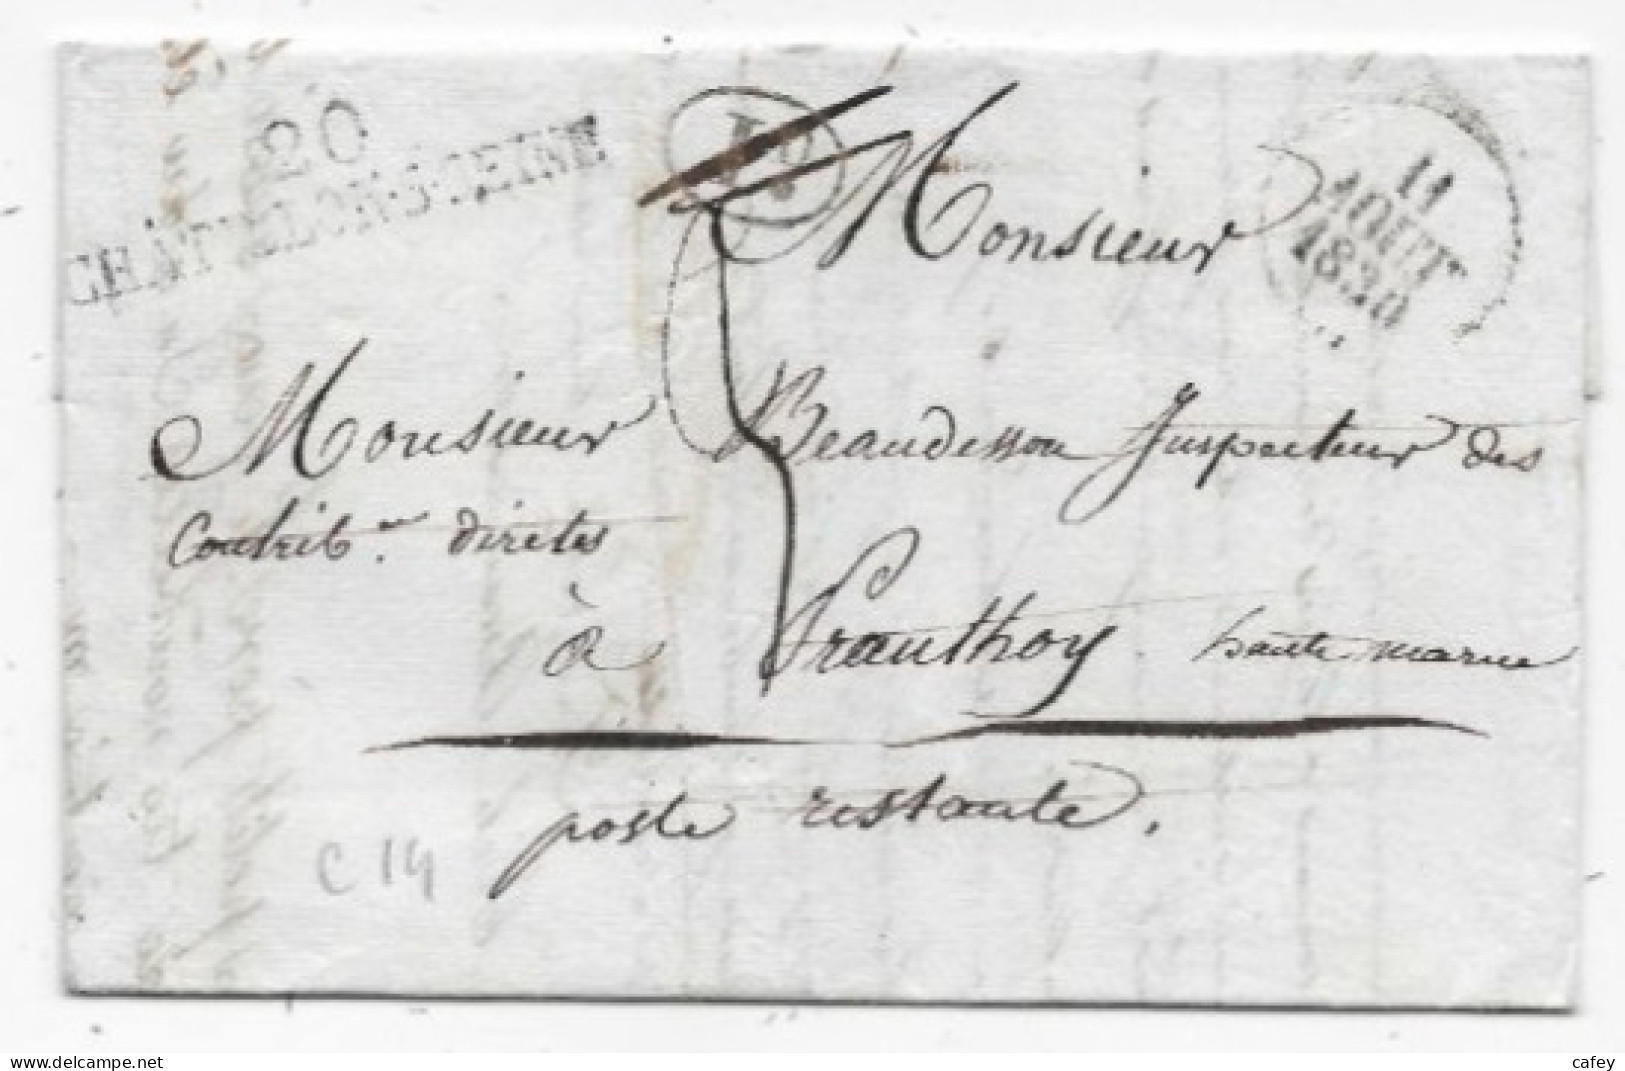 COTE D'OR Lettre Avec Texte De 1830 Marque Postale 20 / CHATILLON S SEINE + Décime Rural  Rare Association - 1801-1848: Precursors XIX